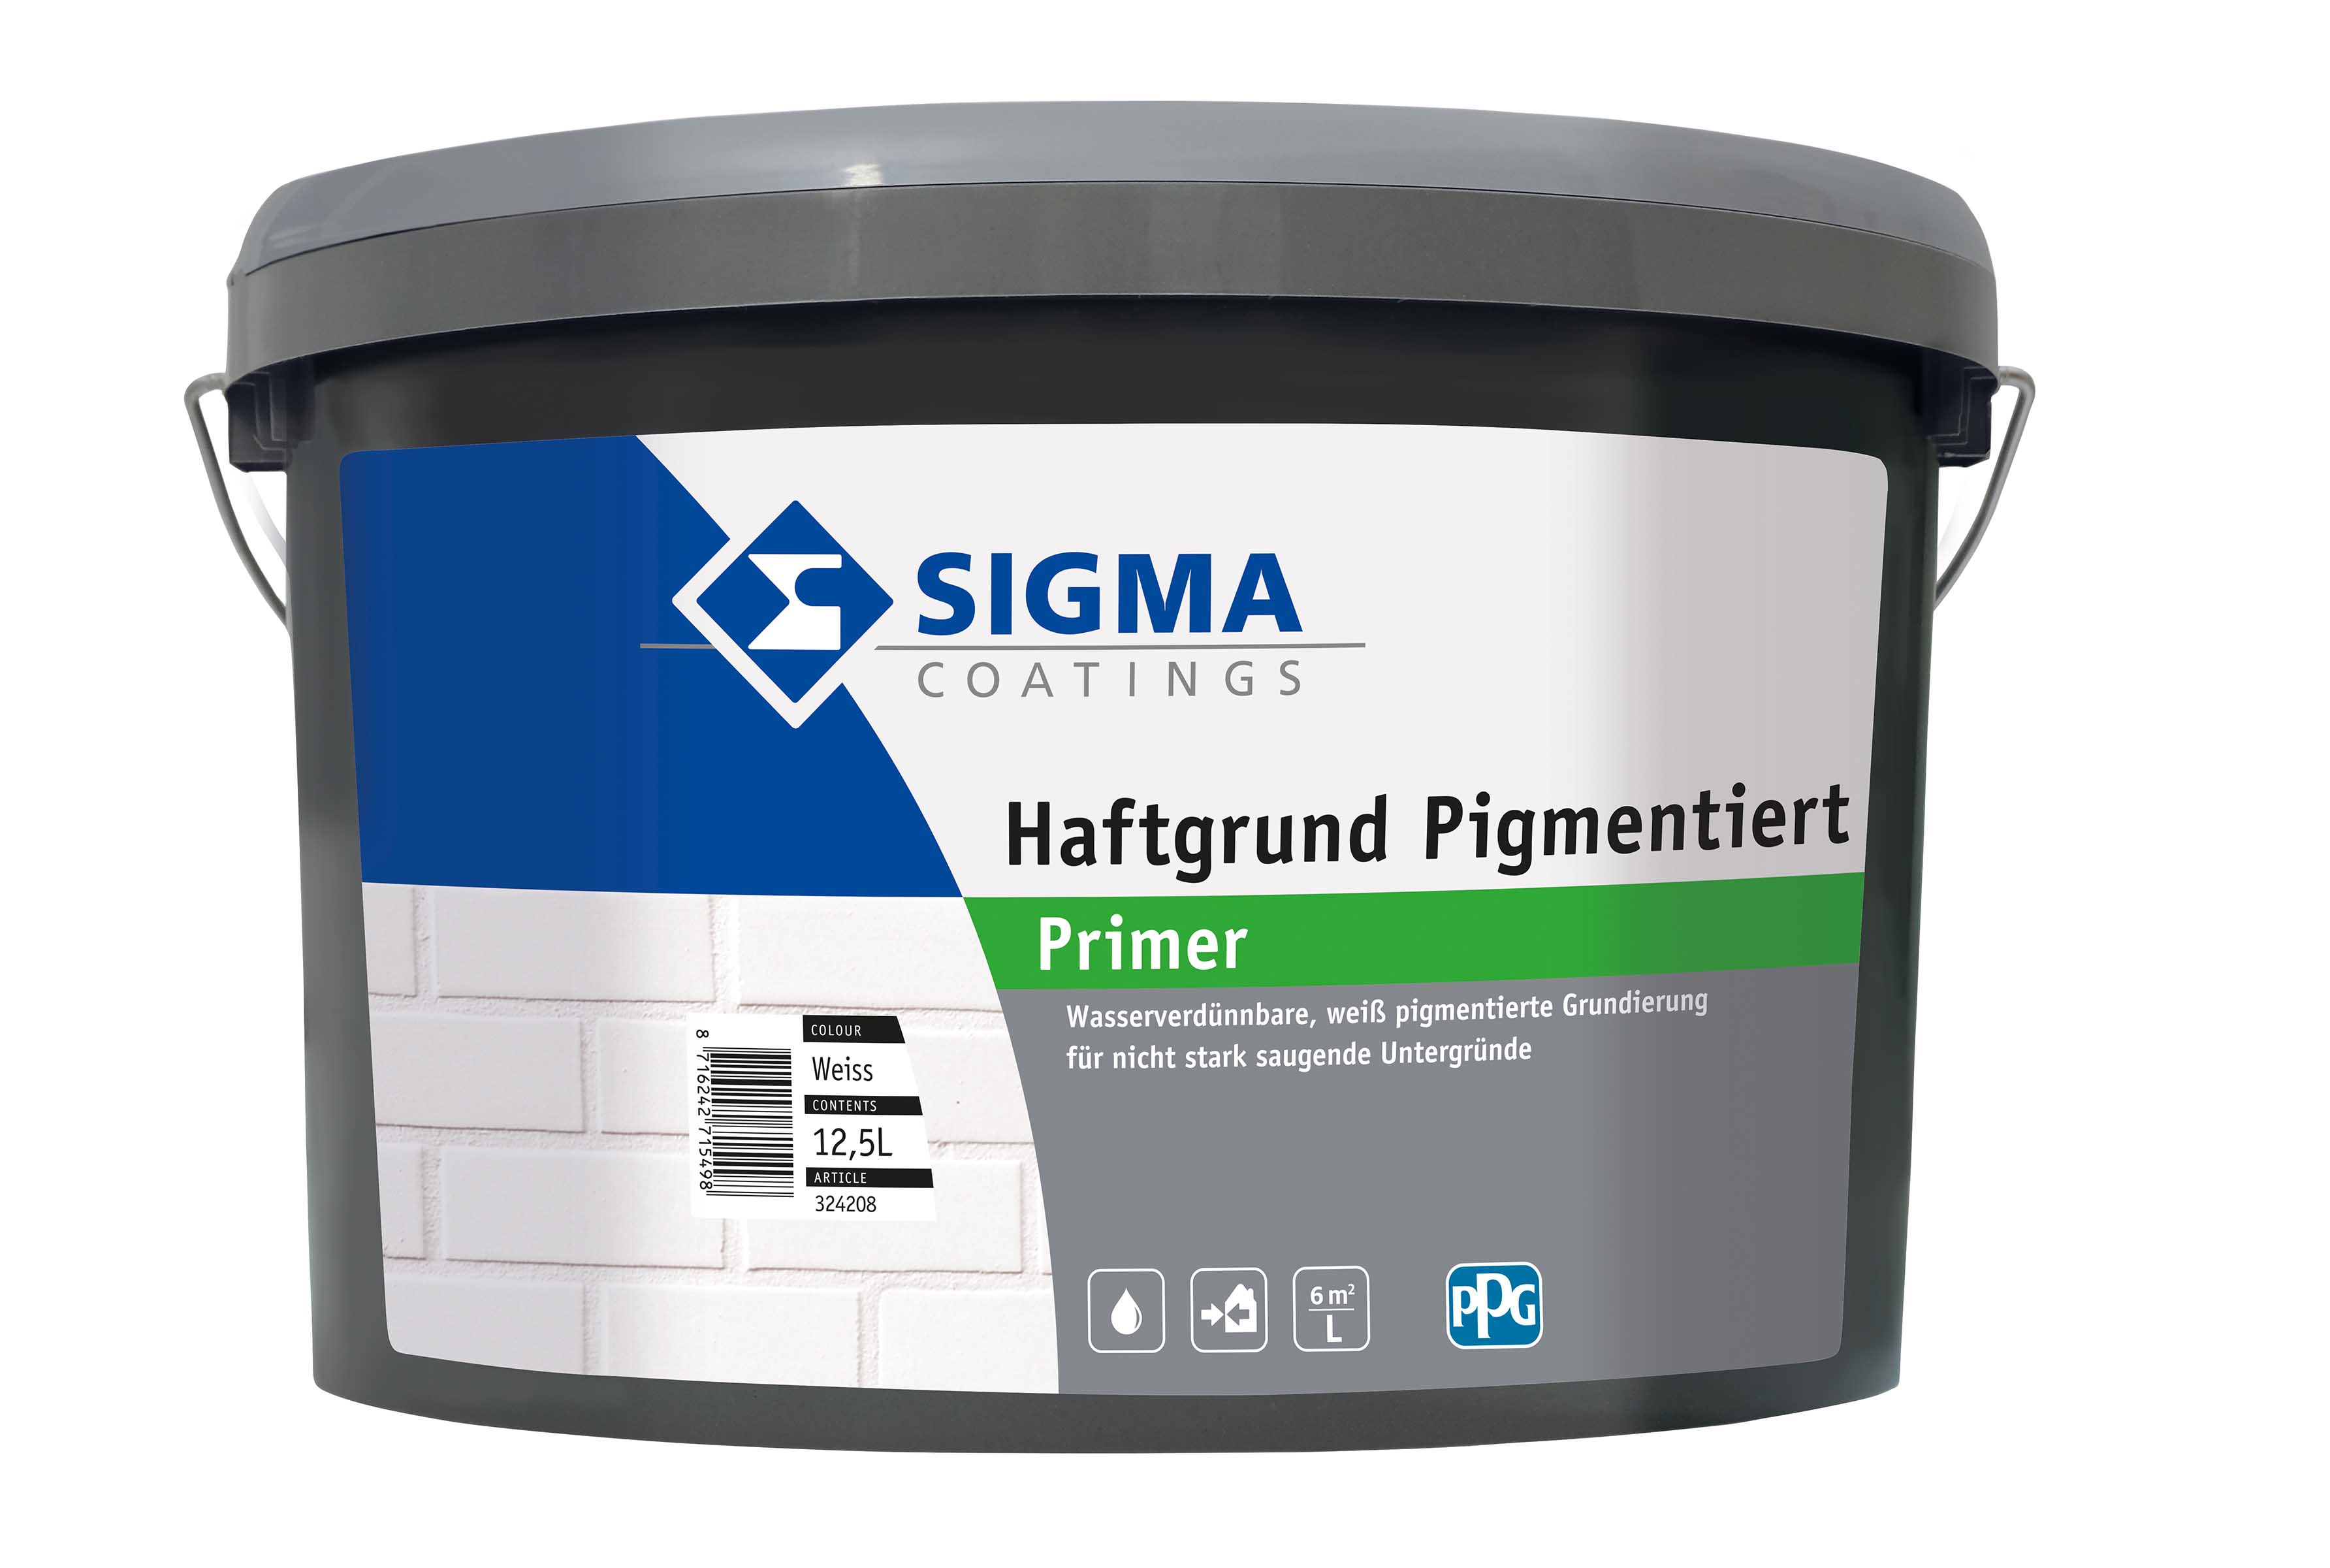 SIGMA Haftgrund pigmentiert Weiß 12,5 L - wasserverdünnbare Universalgrundierung 